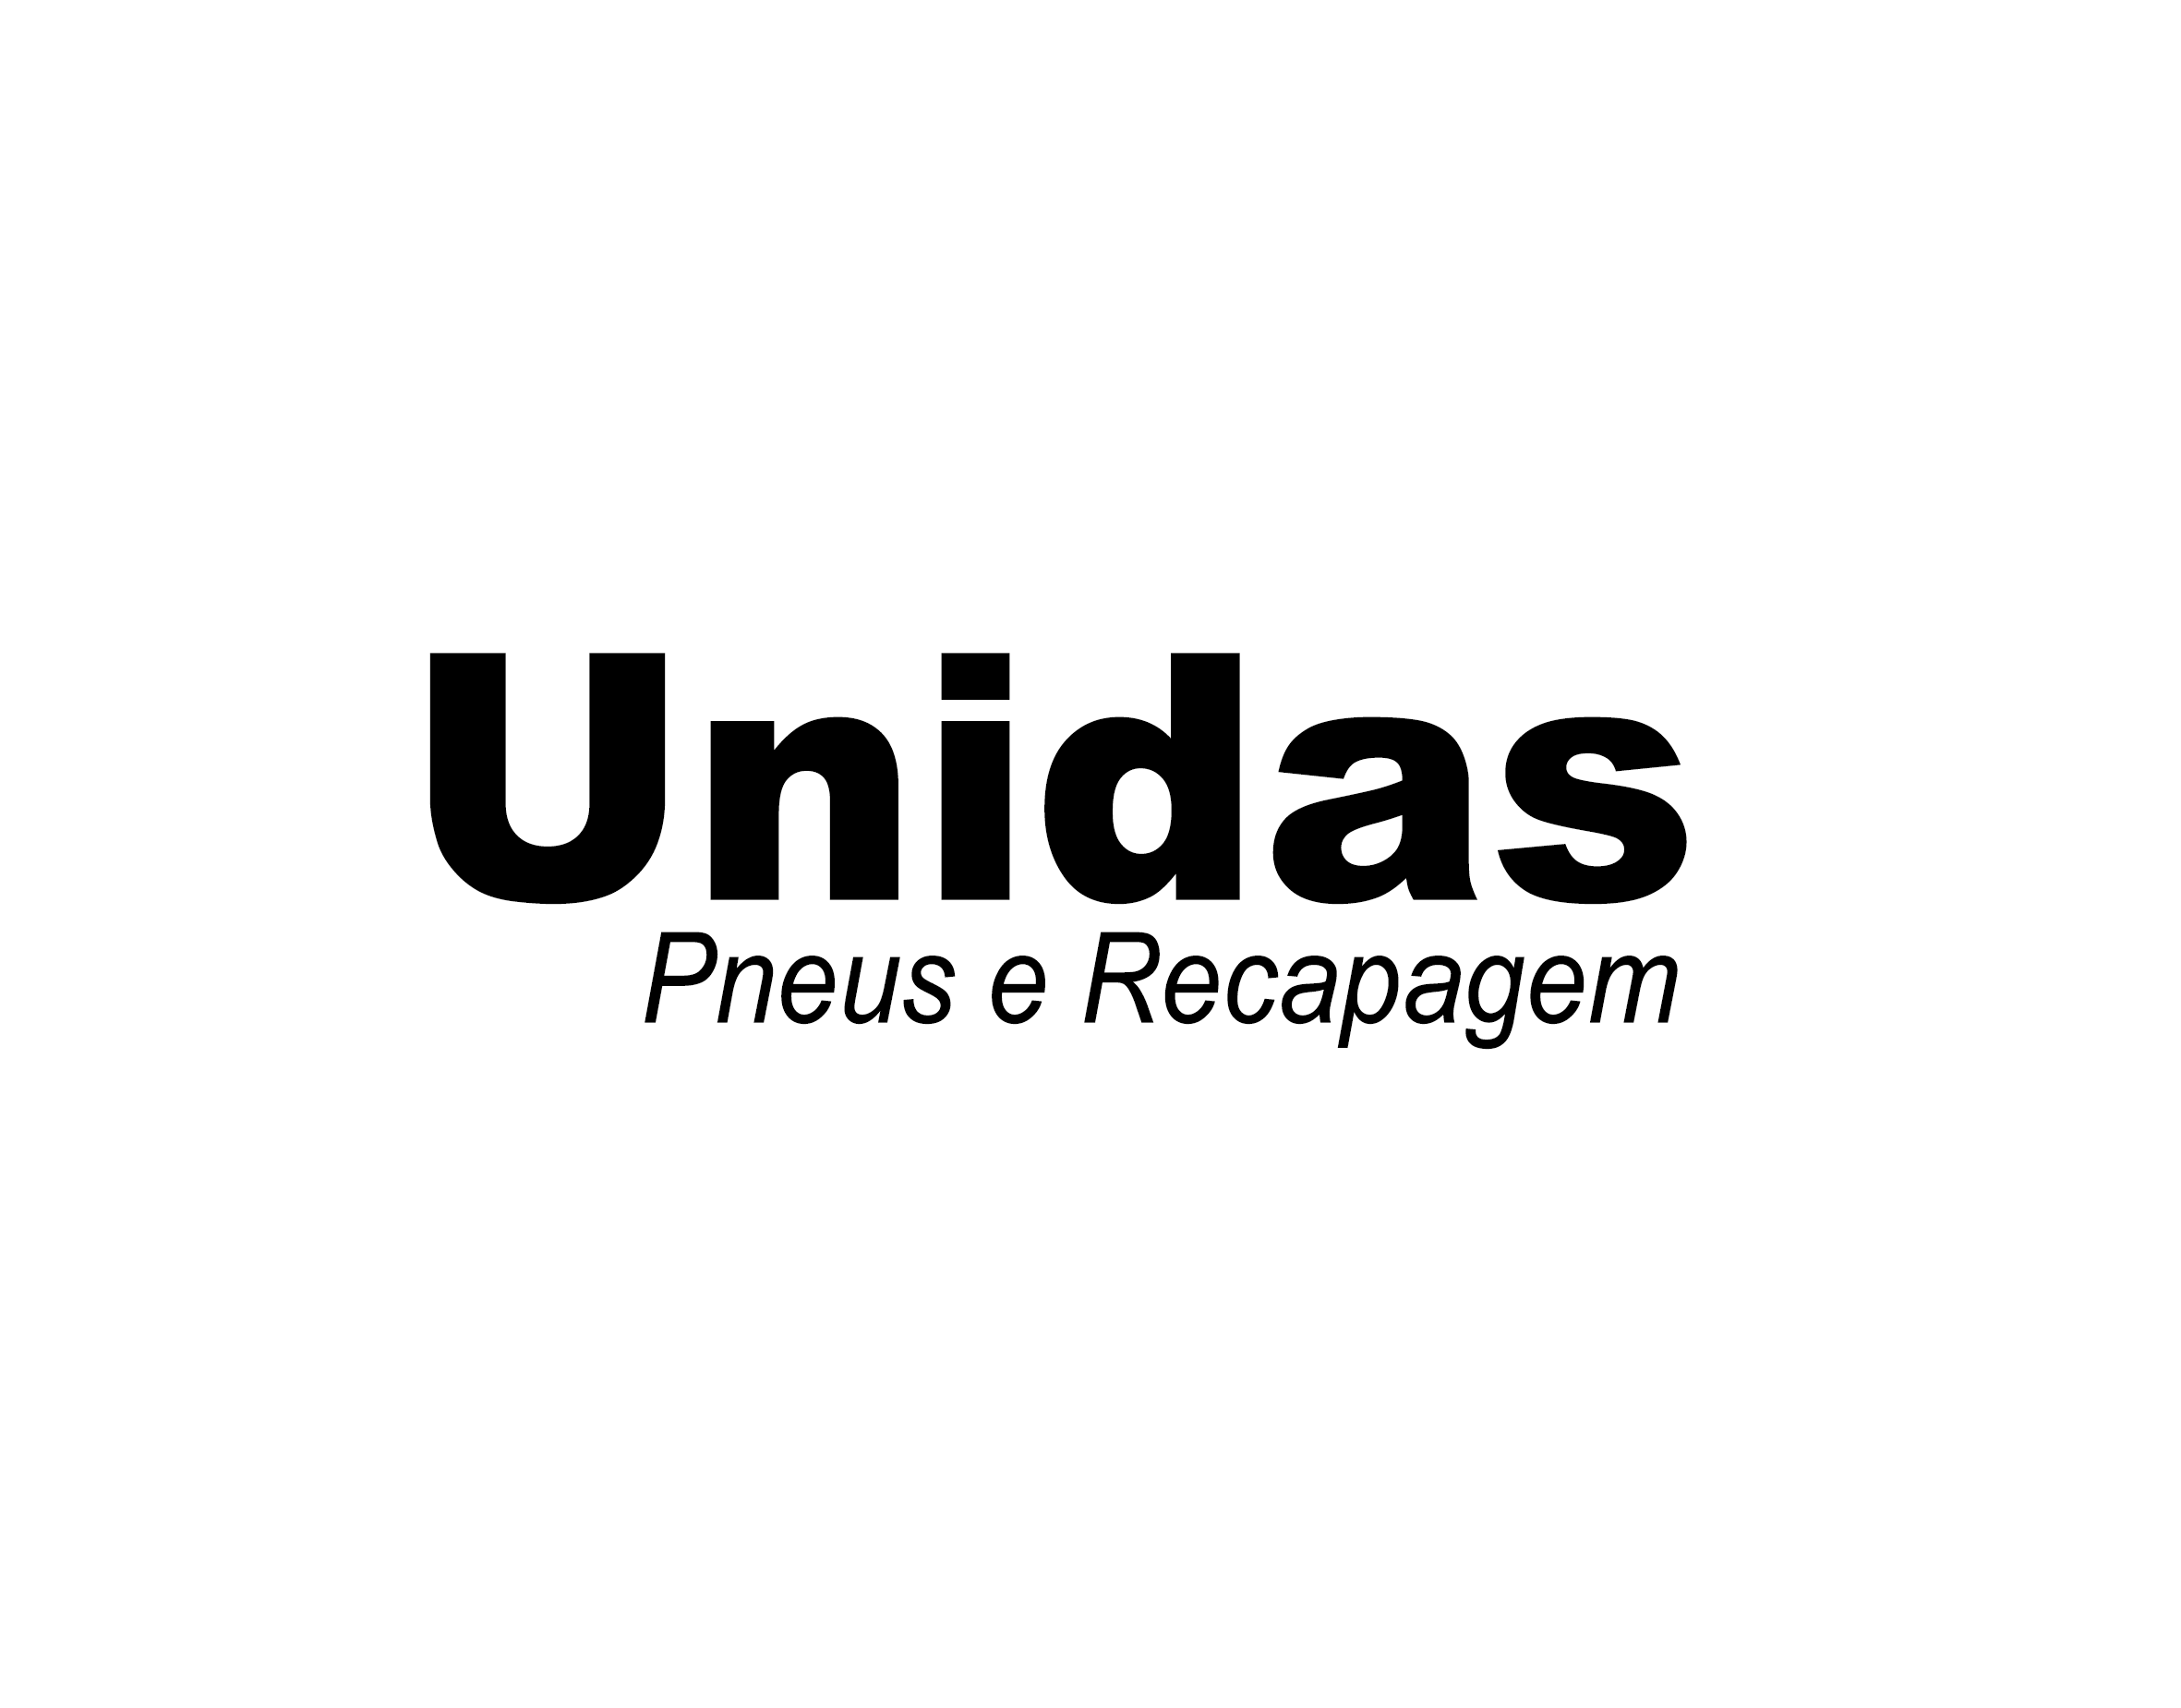 LOGO-UNIDAS-PNEUS-e-RECAPAGEM.png